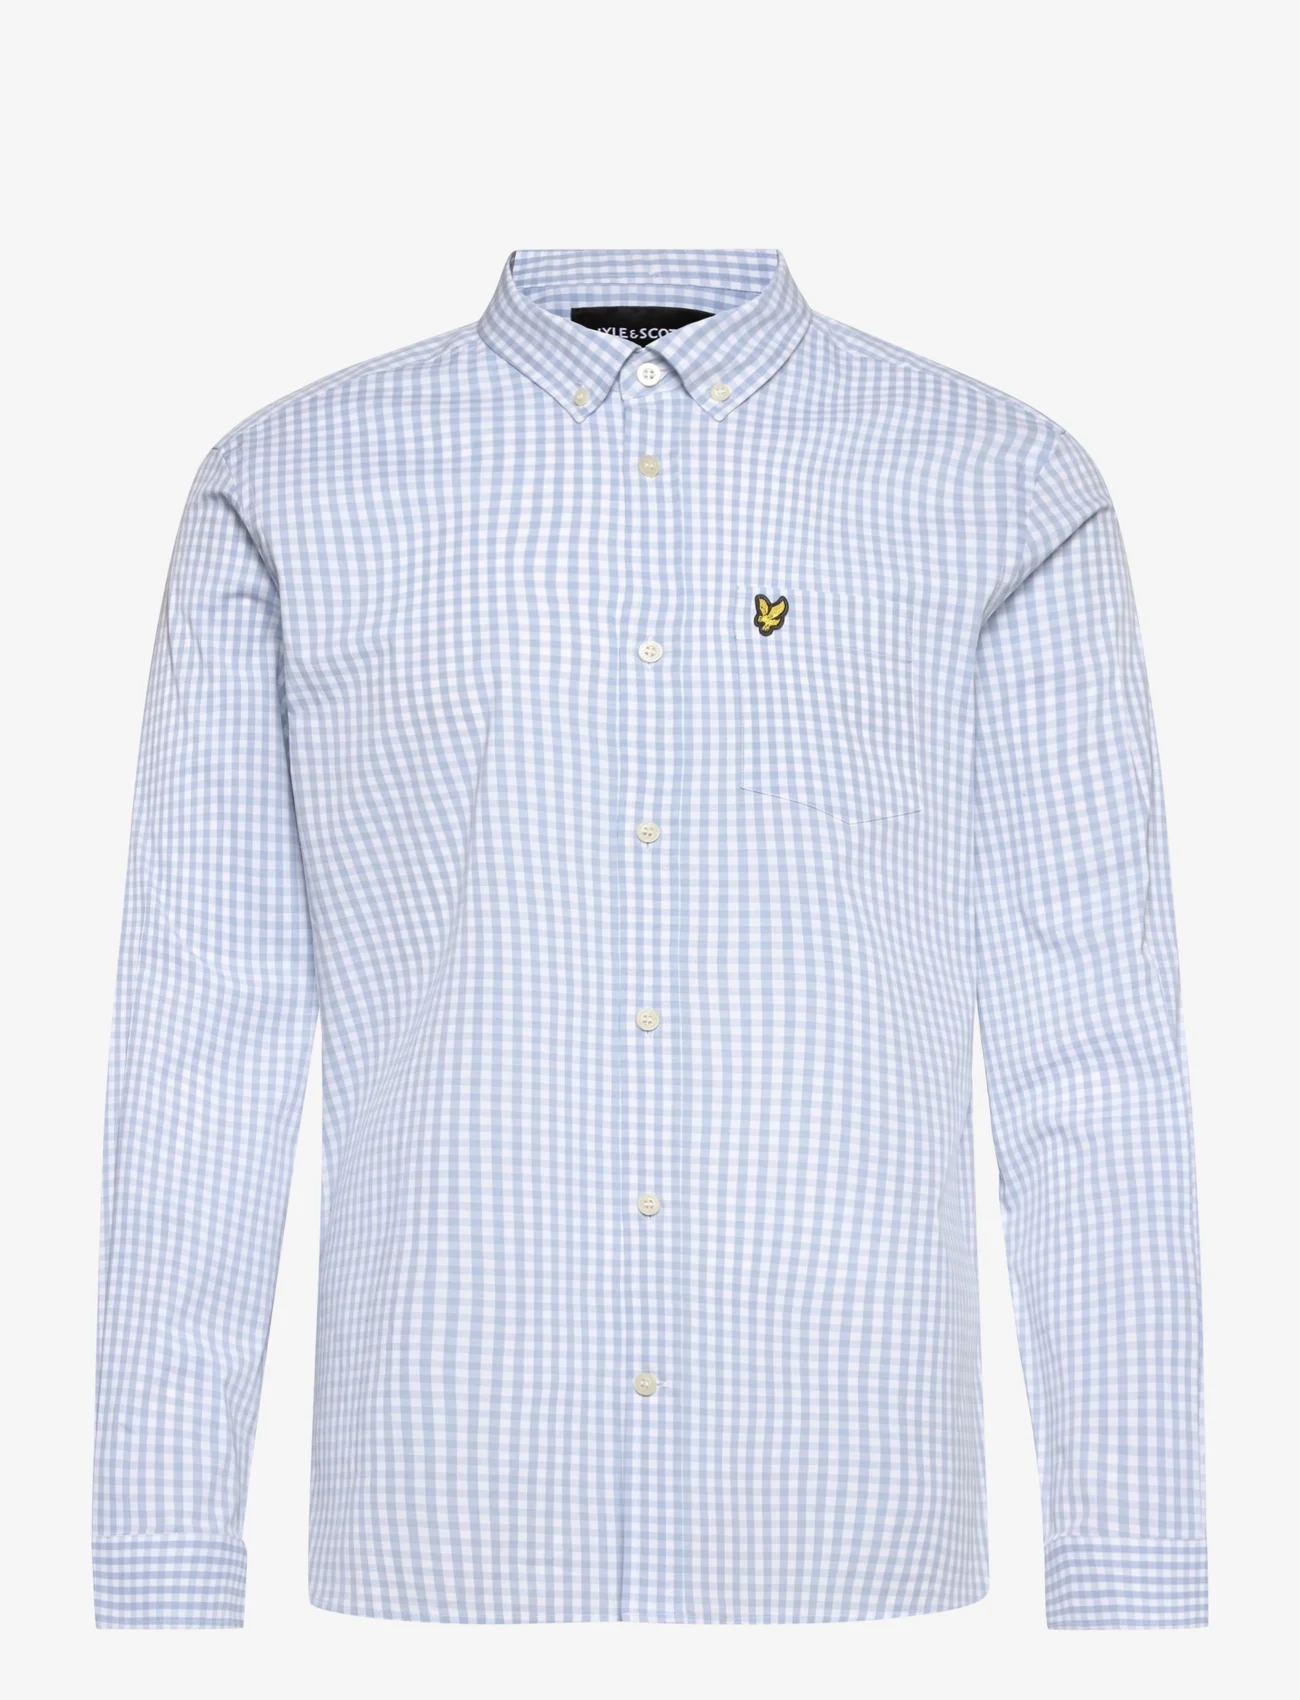 Lyle & Scott - LS Slim Fit Gingham Shirt - karierte hemden - light blue/ white - 0